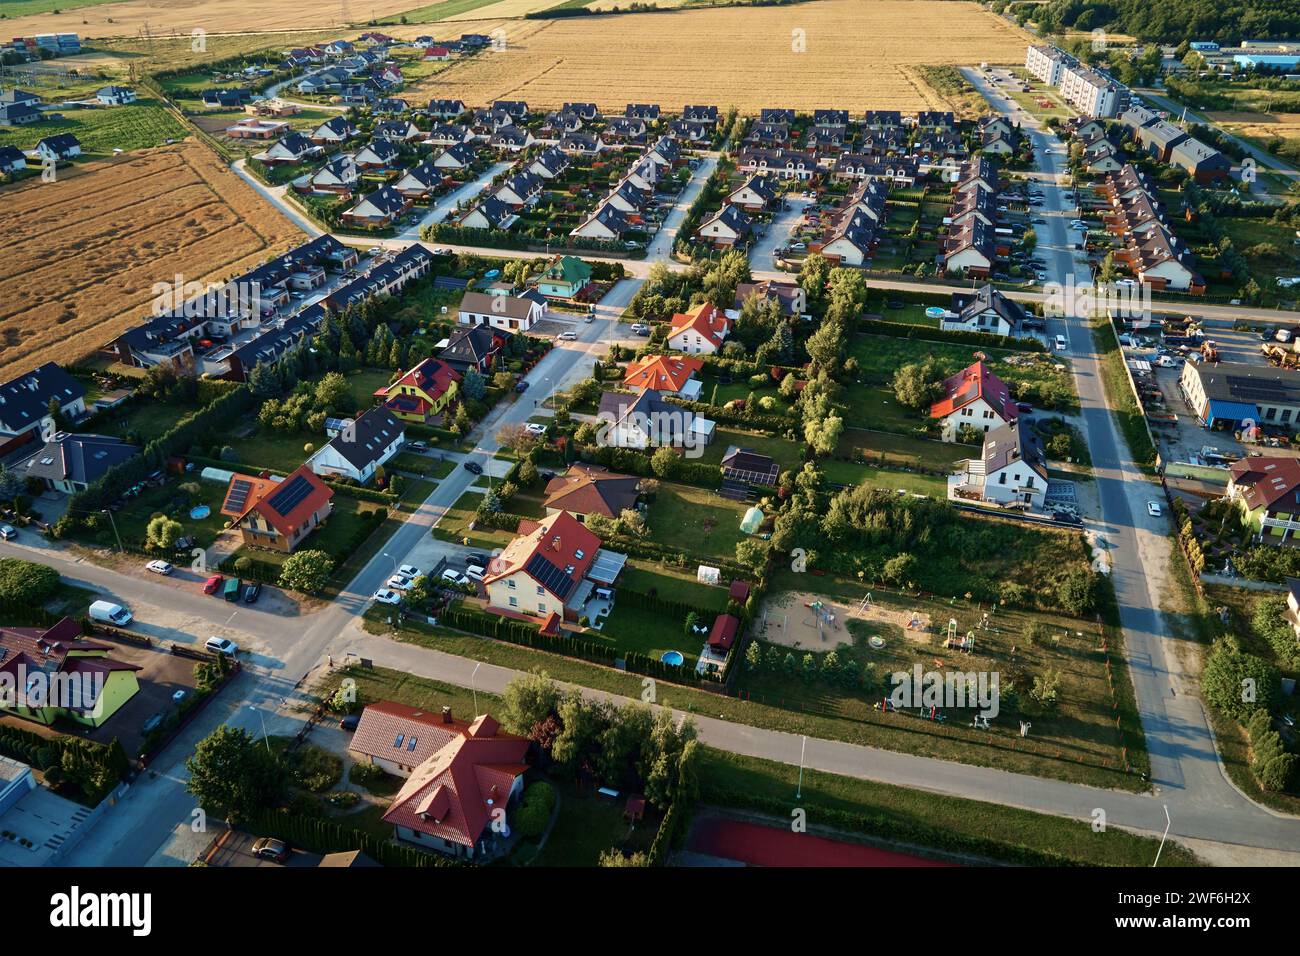 Wohnhäuser in einer kleinen Stadt in der Nähe von landwirtschaftlichen Feldern, Vogelperspektive. Luftaufnahme des europäischen Vorstadtviertels mit Stadthäusern. Immobilien in Stockfoto